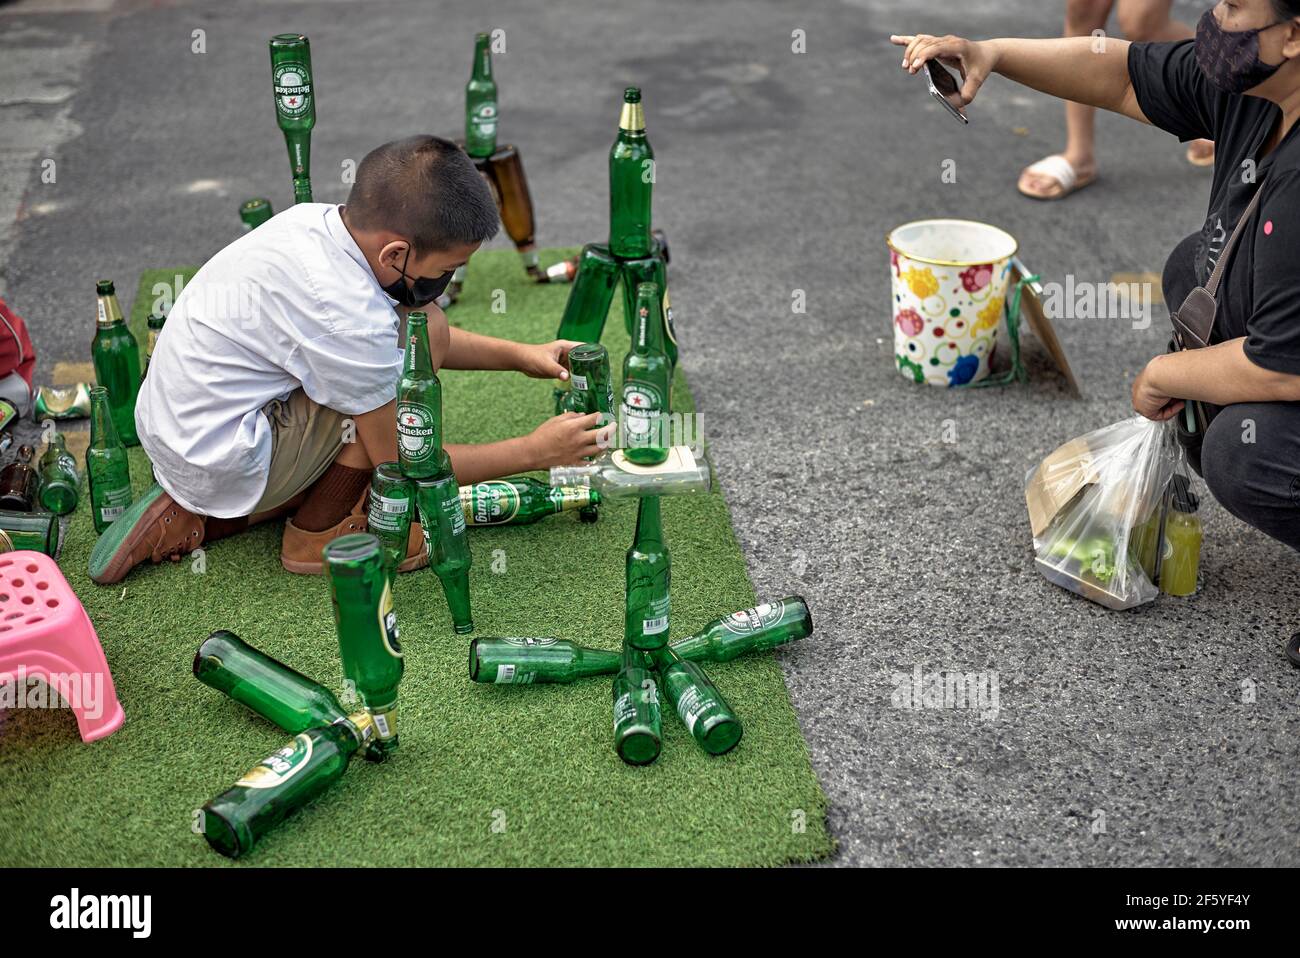 Bambino fantasioso. Ragazzo giovane che organizza e bilancia le bottiglie di birra trucco per guadagnare soldi sulla strada. Thailandia, Sud-est asiatico Foto Stock